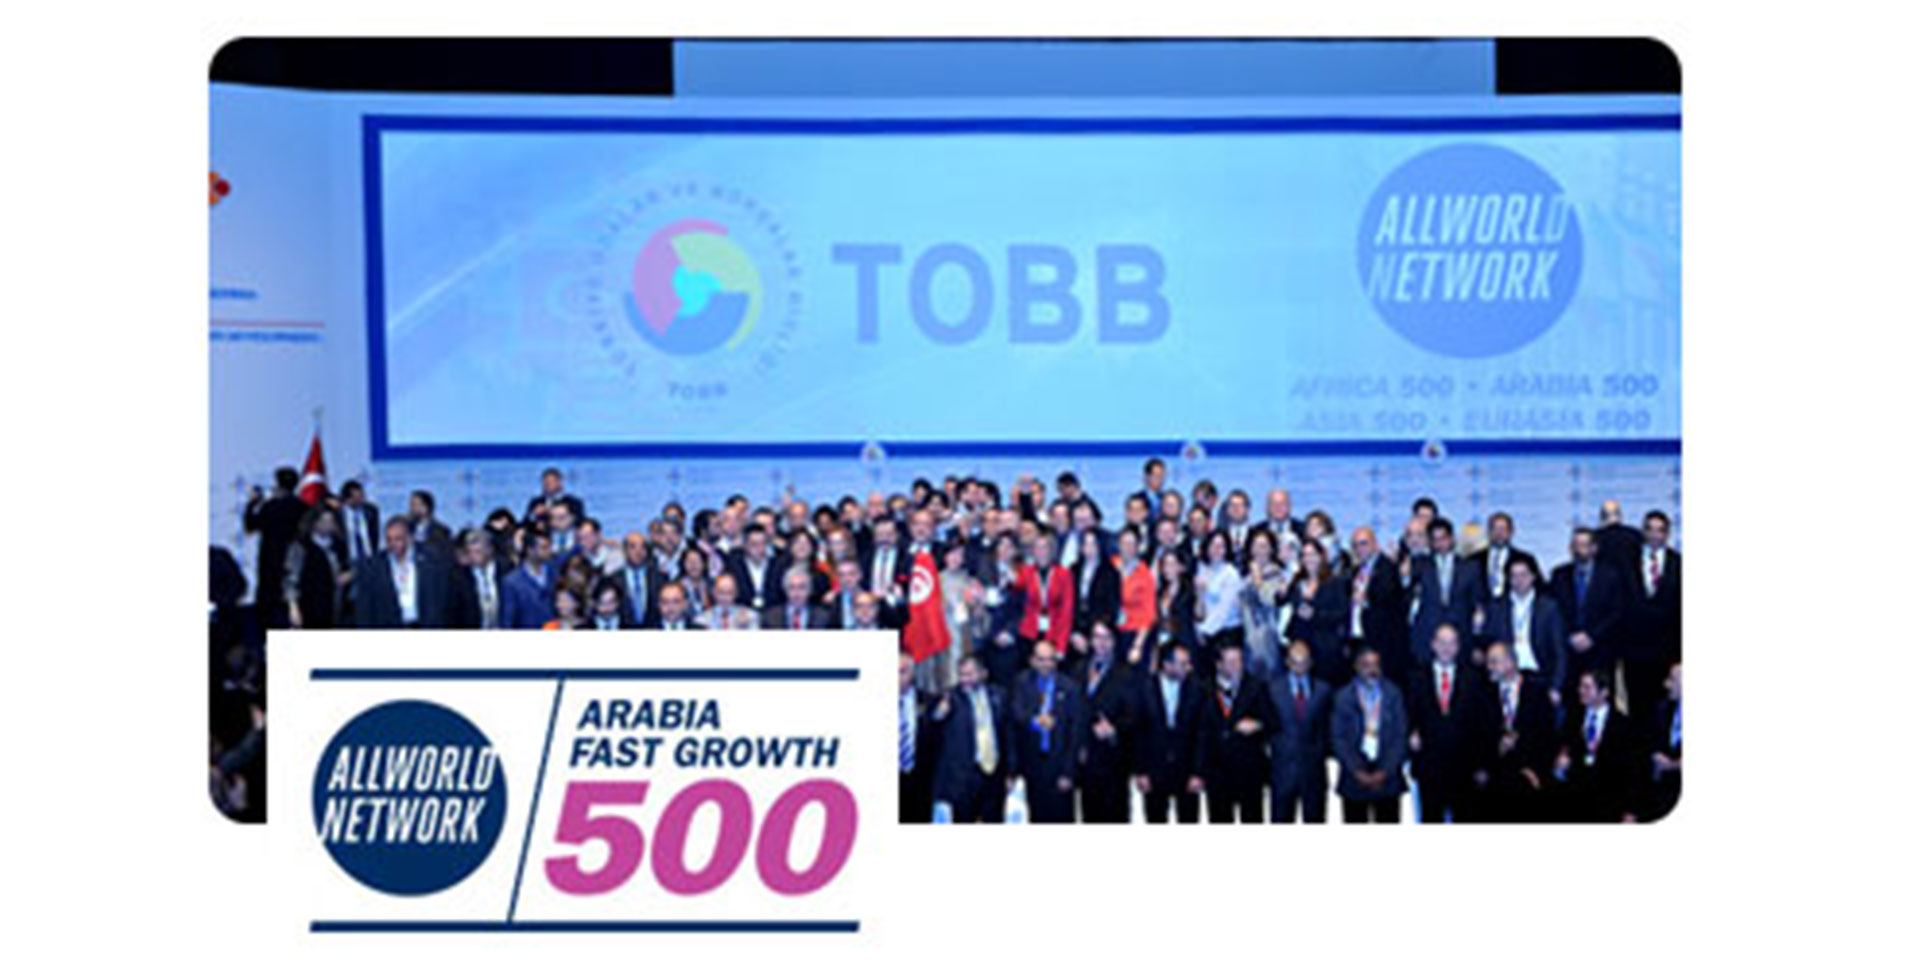 В конкурсе DUBAI 500, в котором приняли участие 500 компаний из 82 стран Самая быстрорастущая компания стала Network